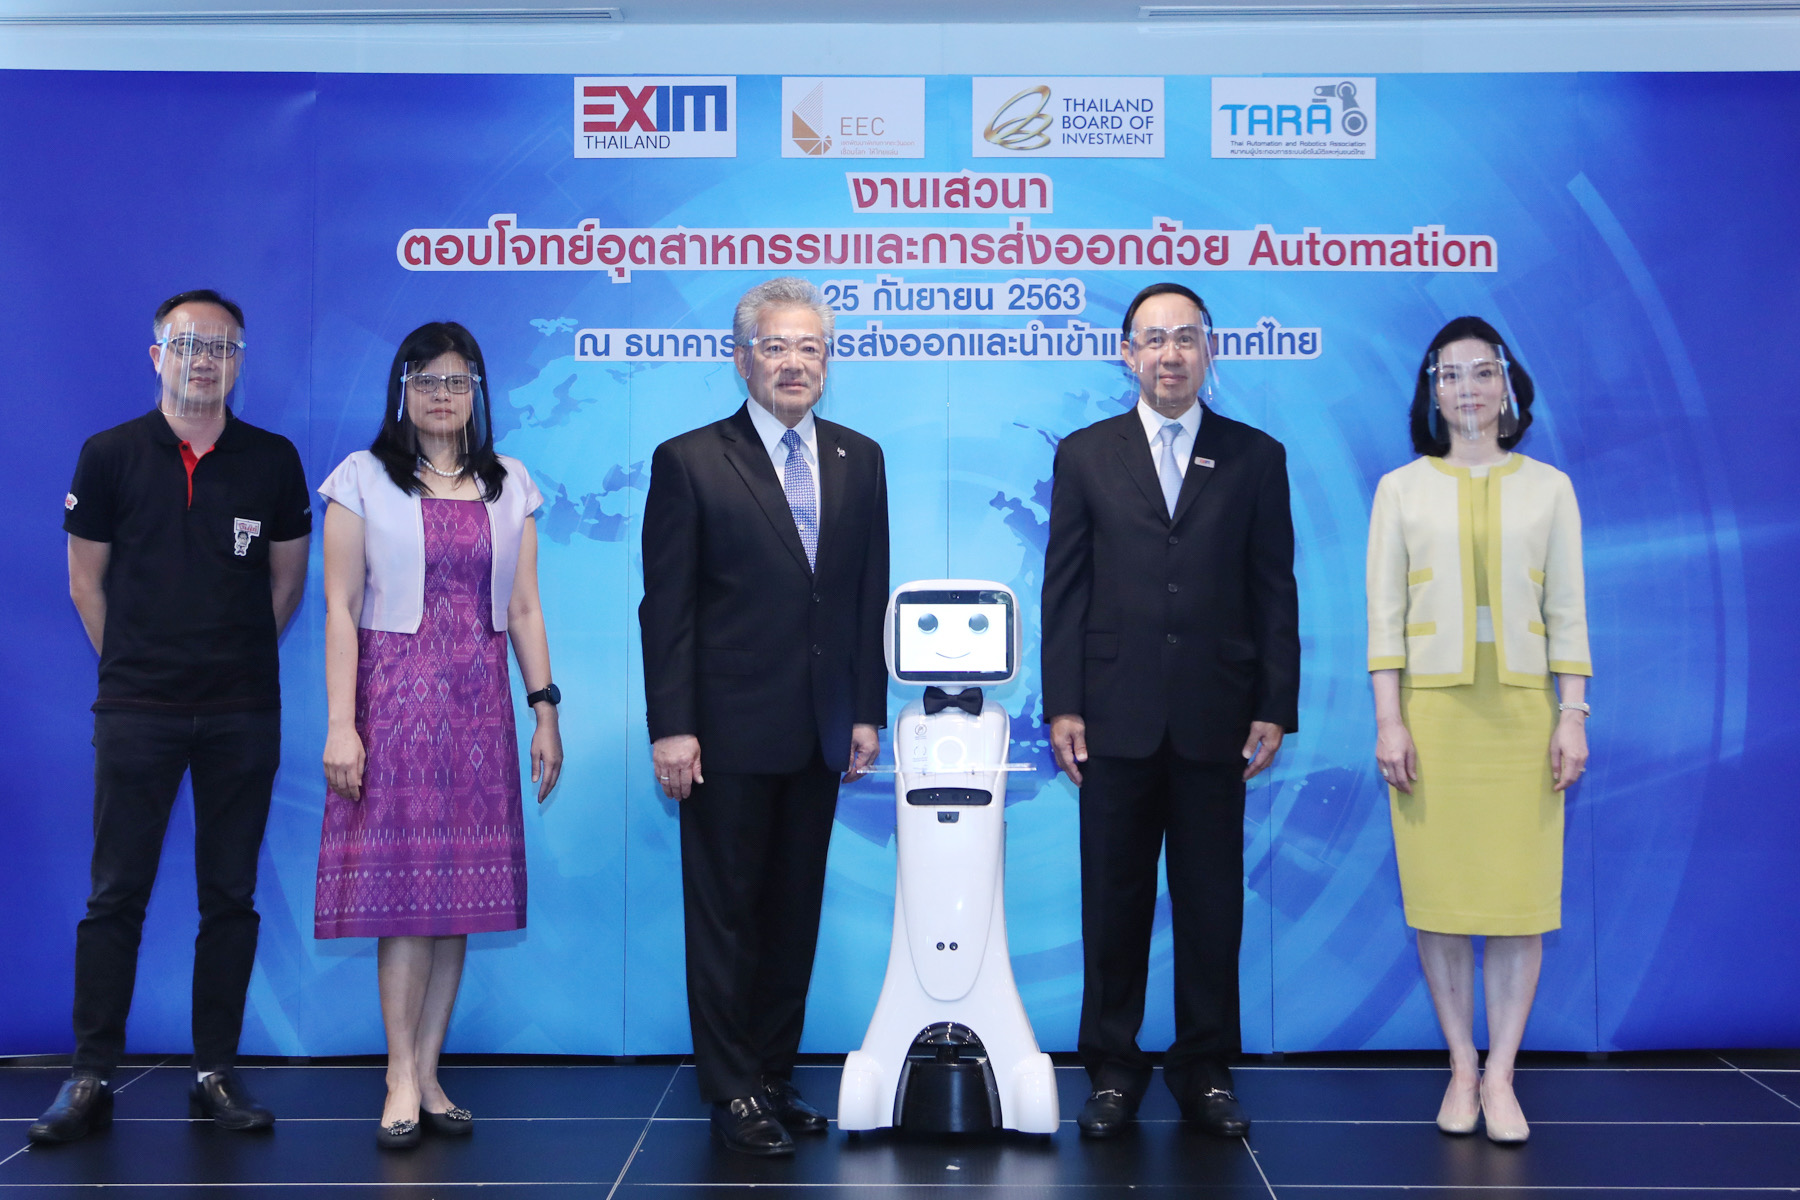 EXIM BANK จับมือภาครัฐและเอกชนส่งเสริมการผลิตเพื่อส่งออก ใช้หุ่นยนต์ในพื้นที่ EEC